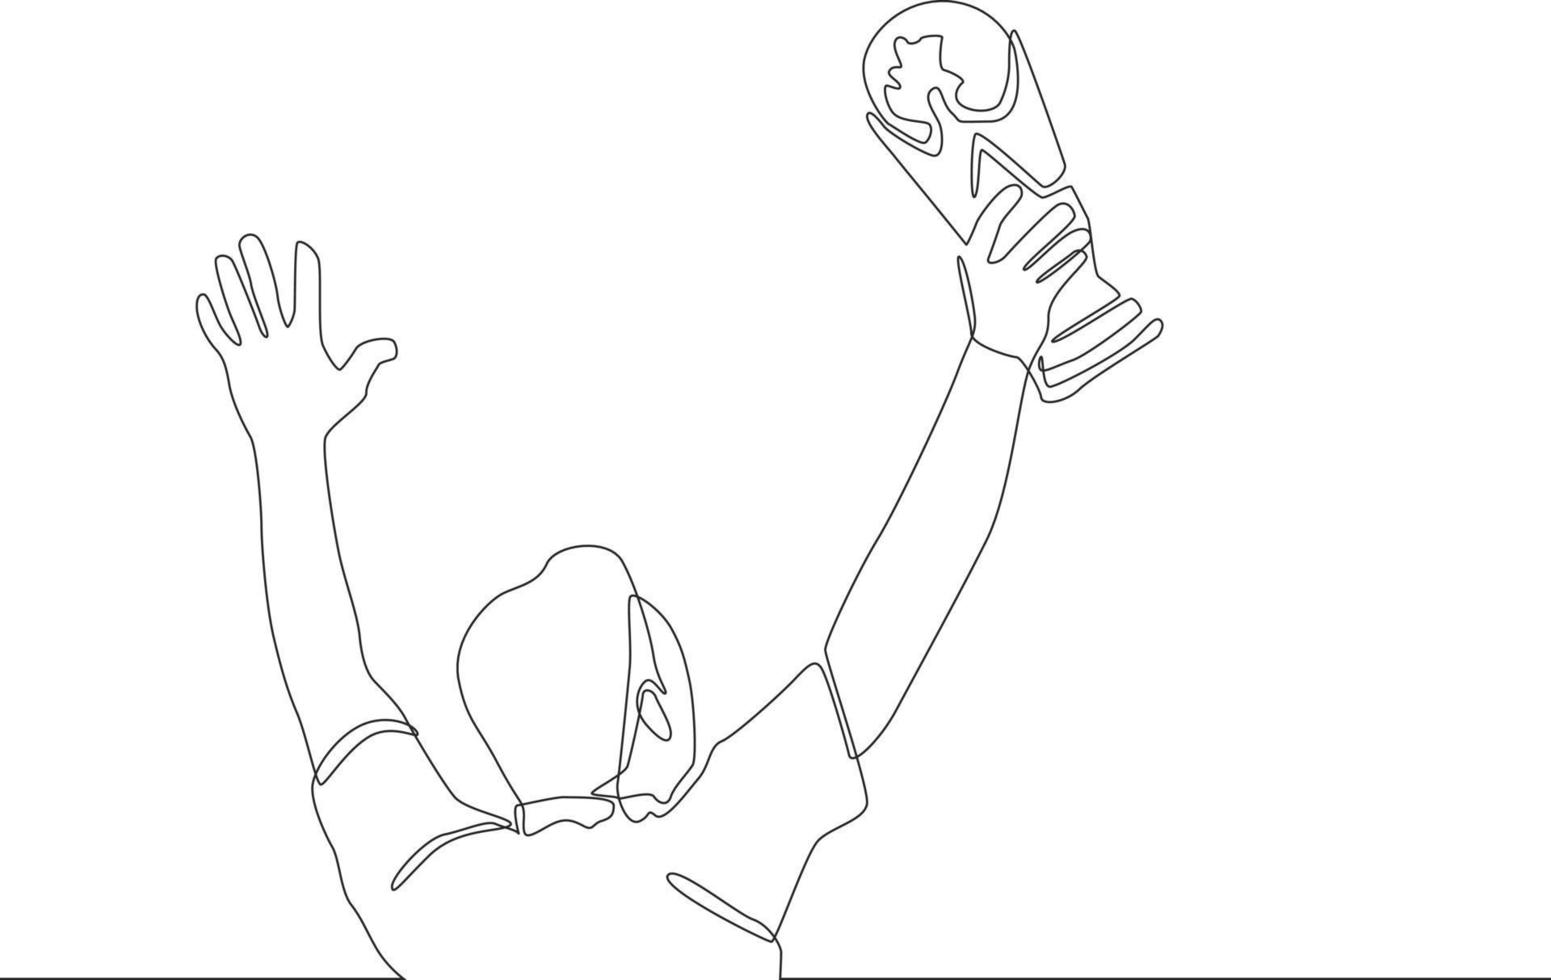 enkele doorlopende lijntekening van achteraanzicht van sportman met trofee. een lijn tekenen ontwerp grafische vectorillustratie. vector